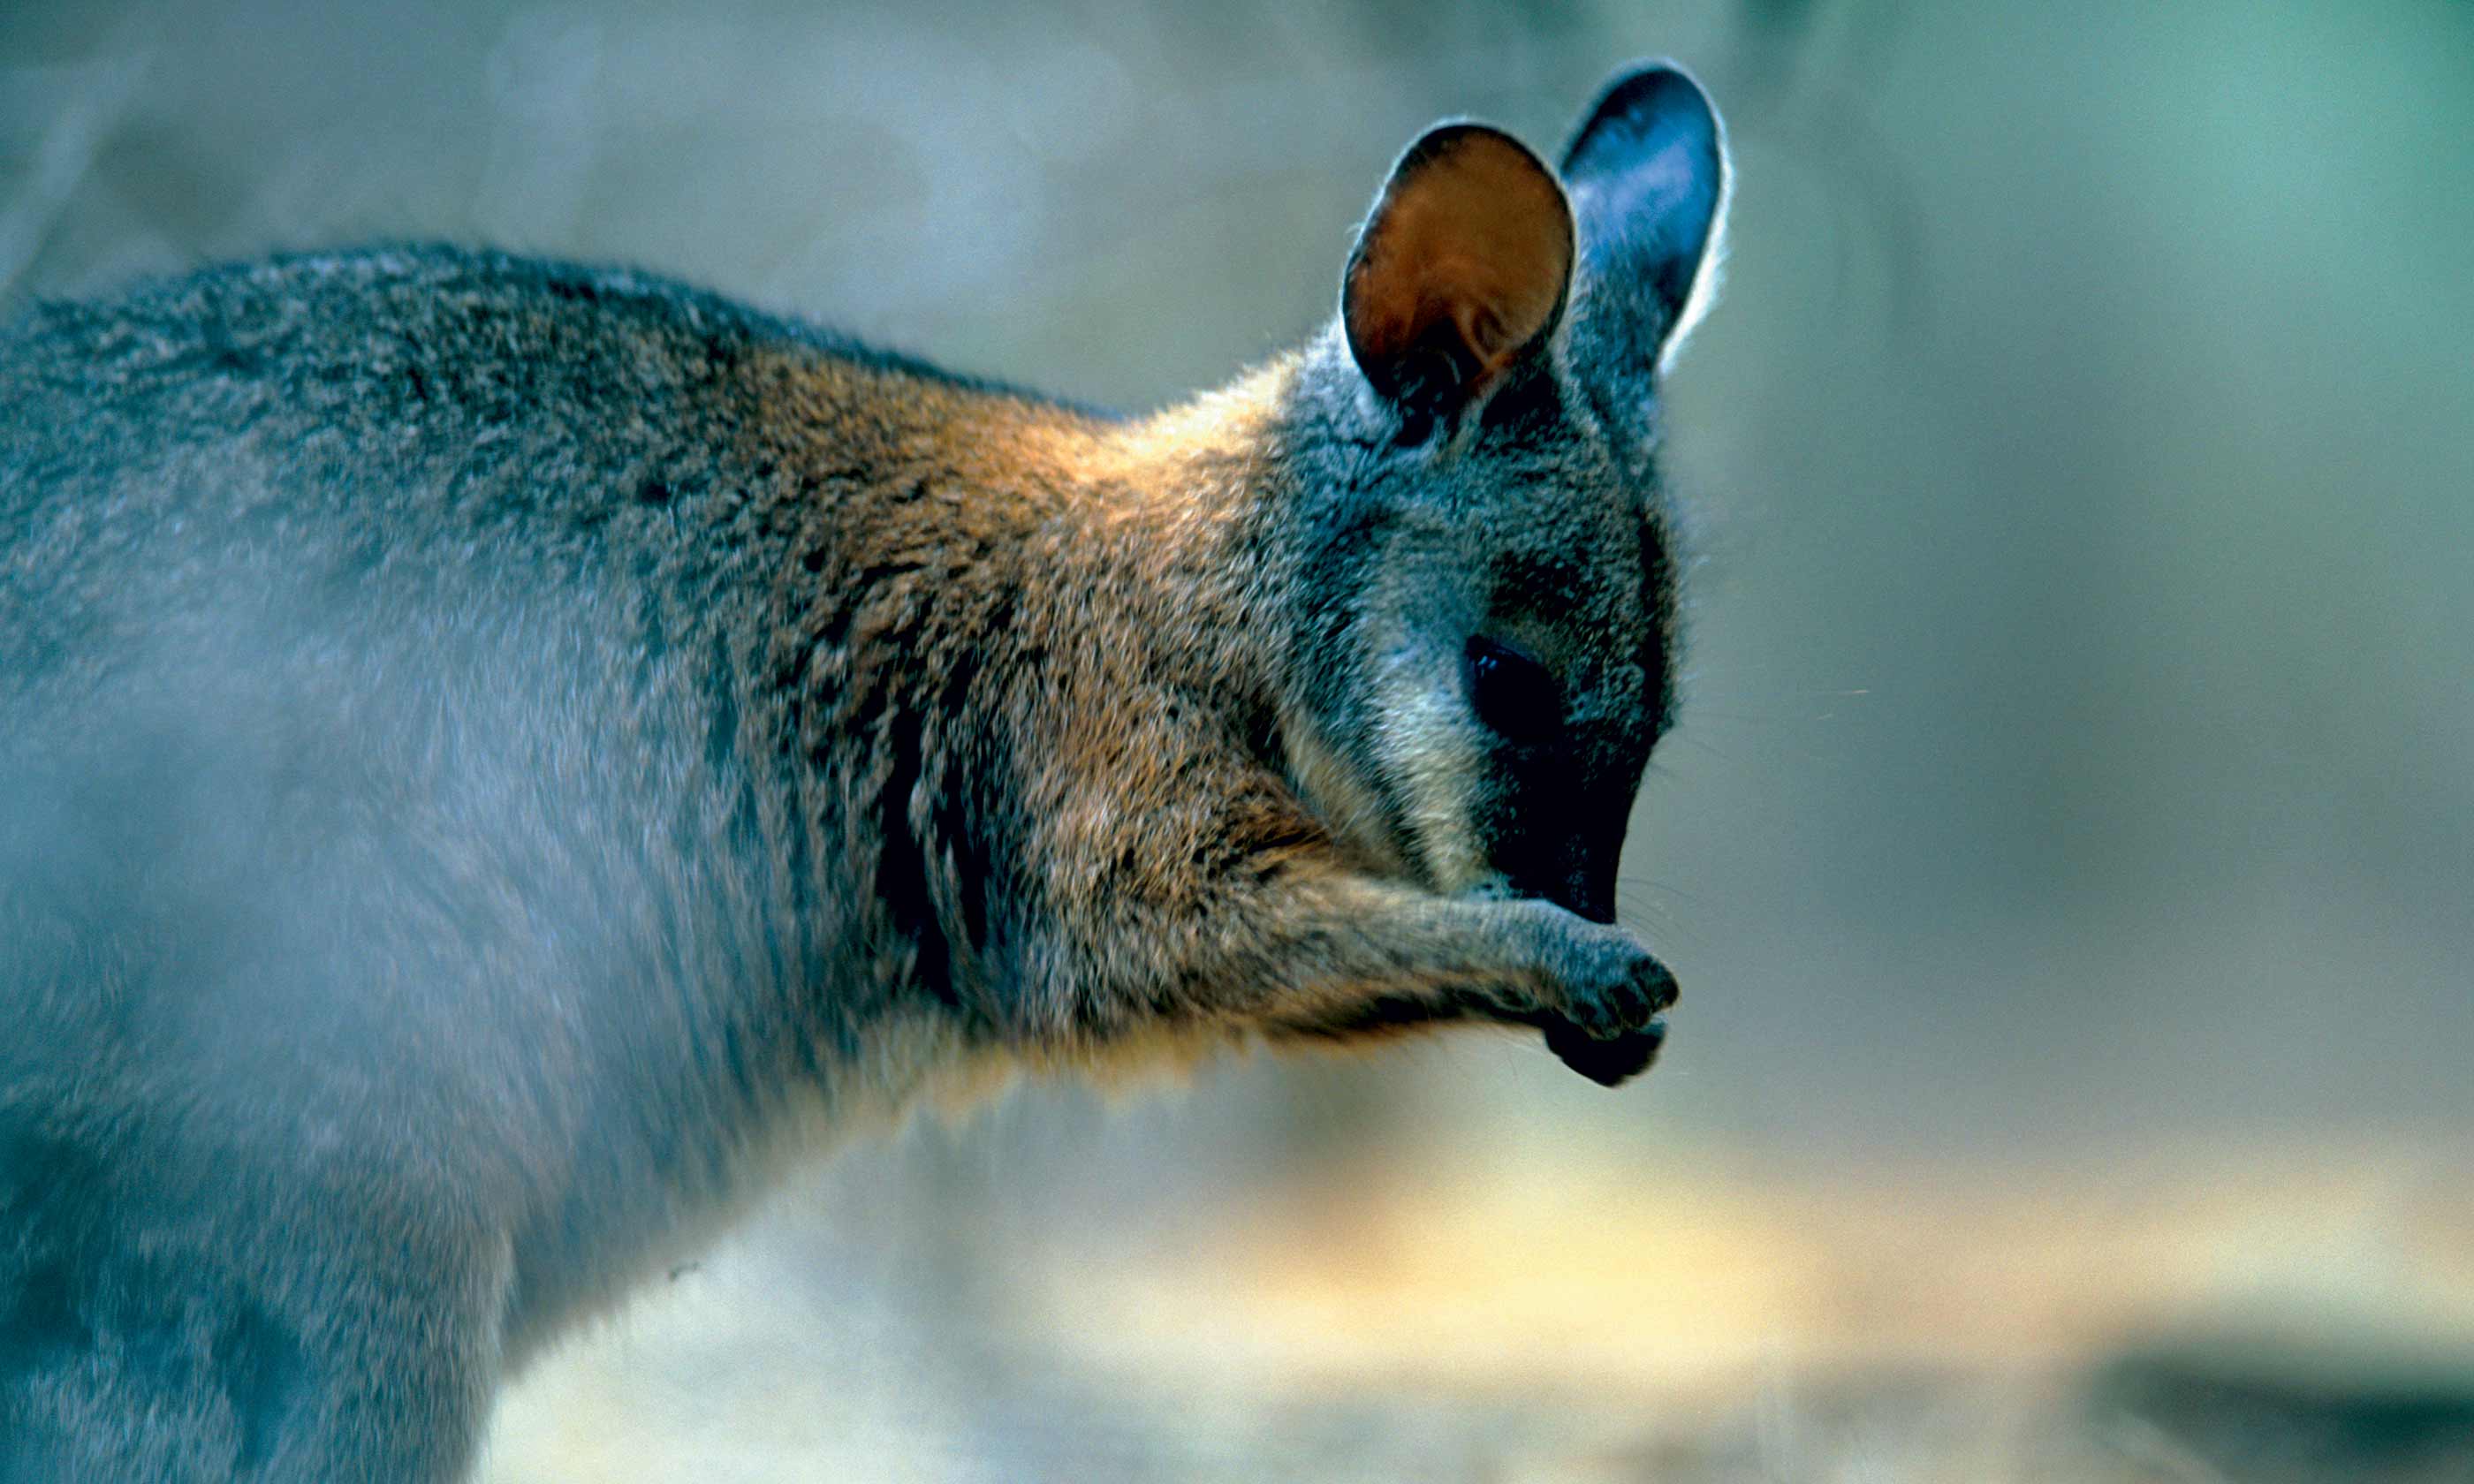 Wallaby, Kangaroo Island (SATC)